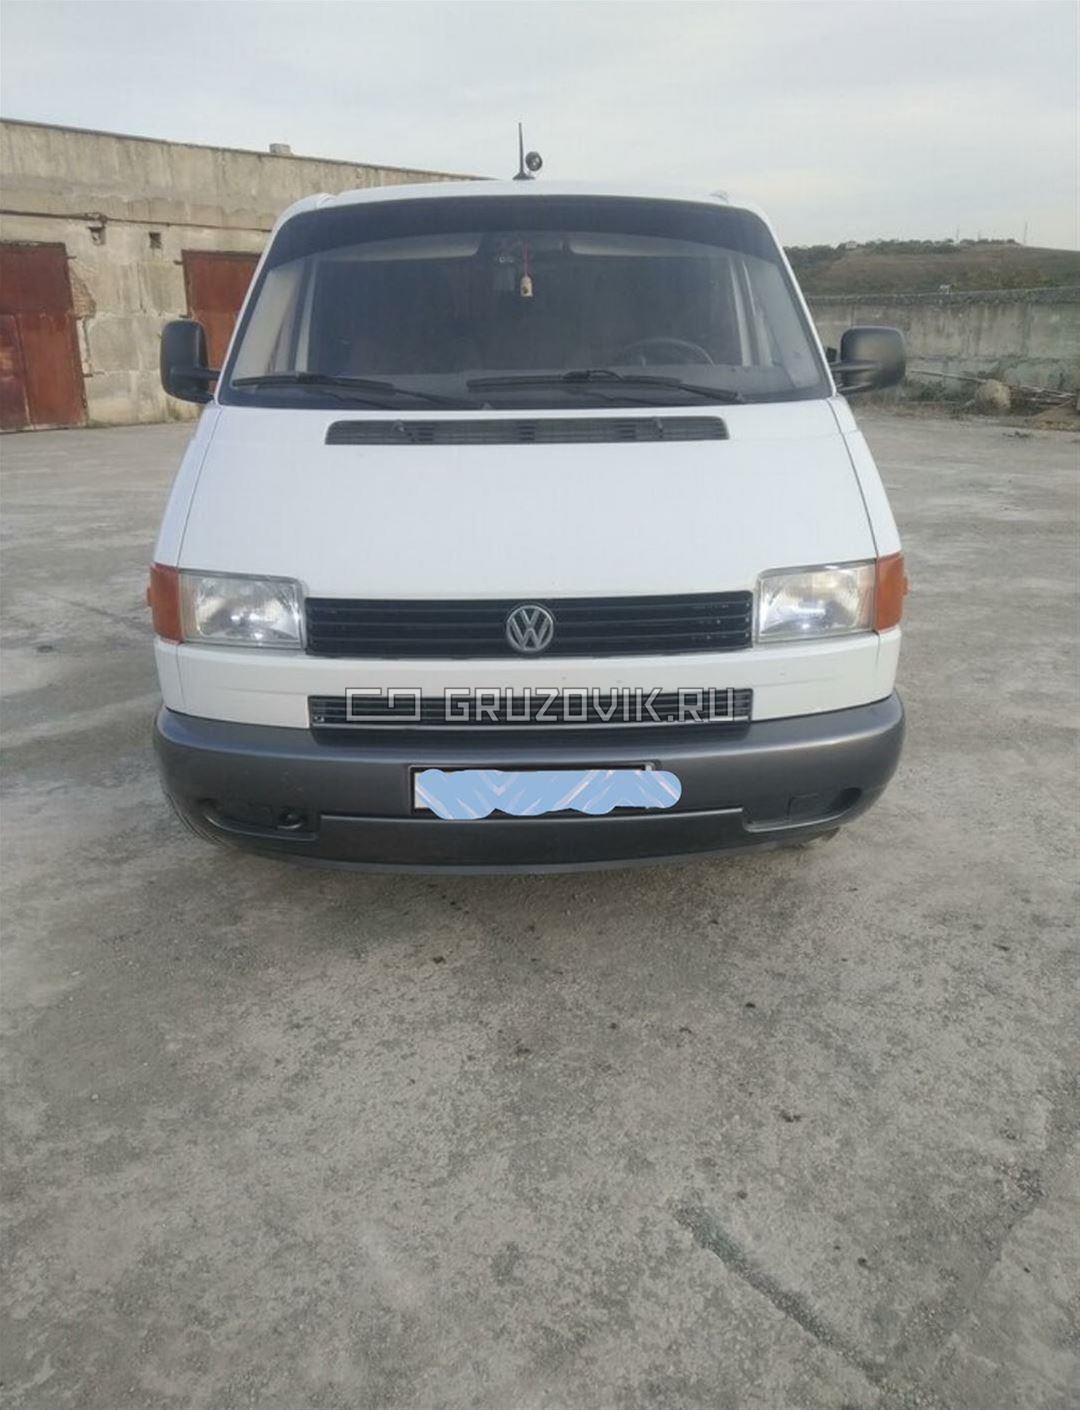 Новый Микроавтобус Volkswagen Transporter в продаже  на Gruzovik.ru, 93 000 ₽